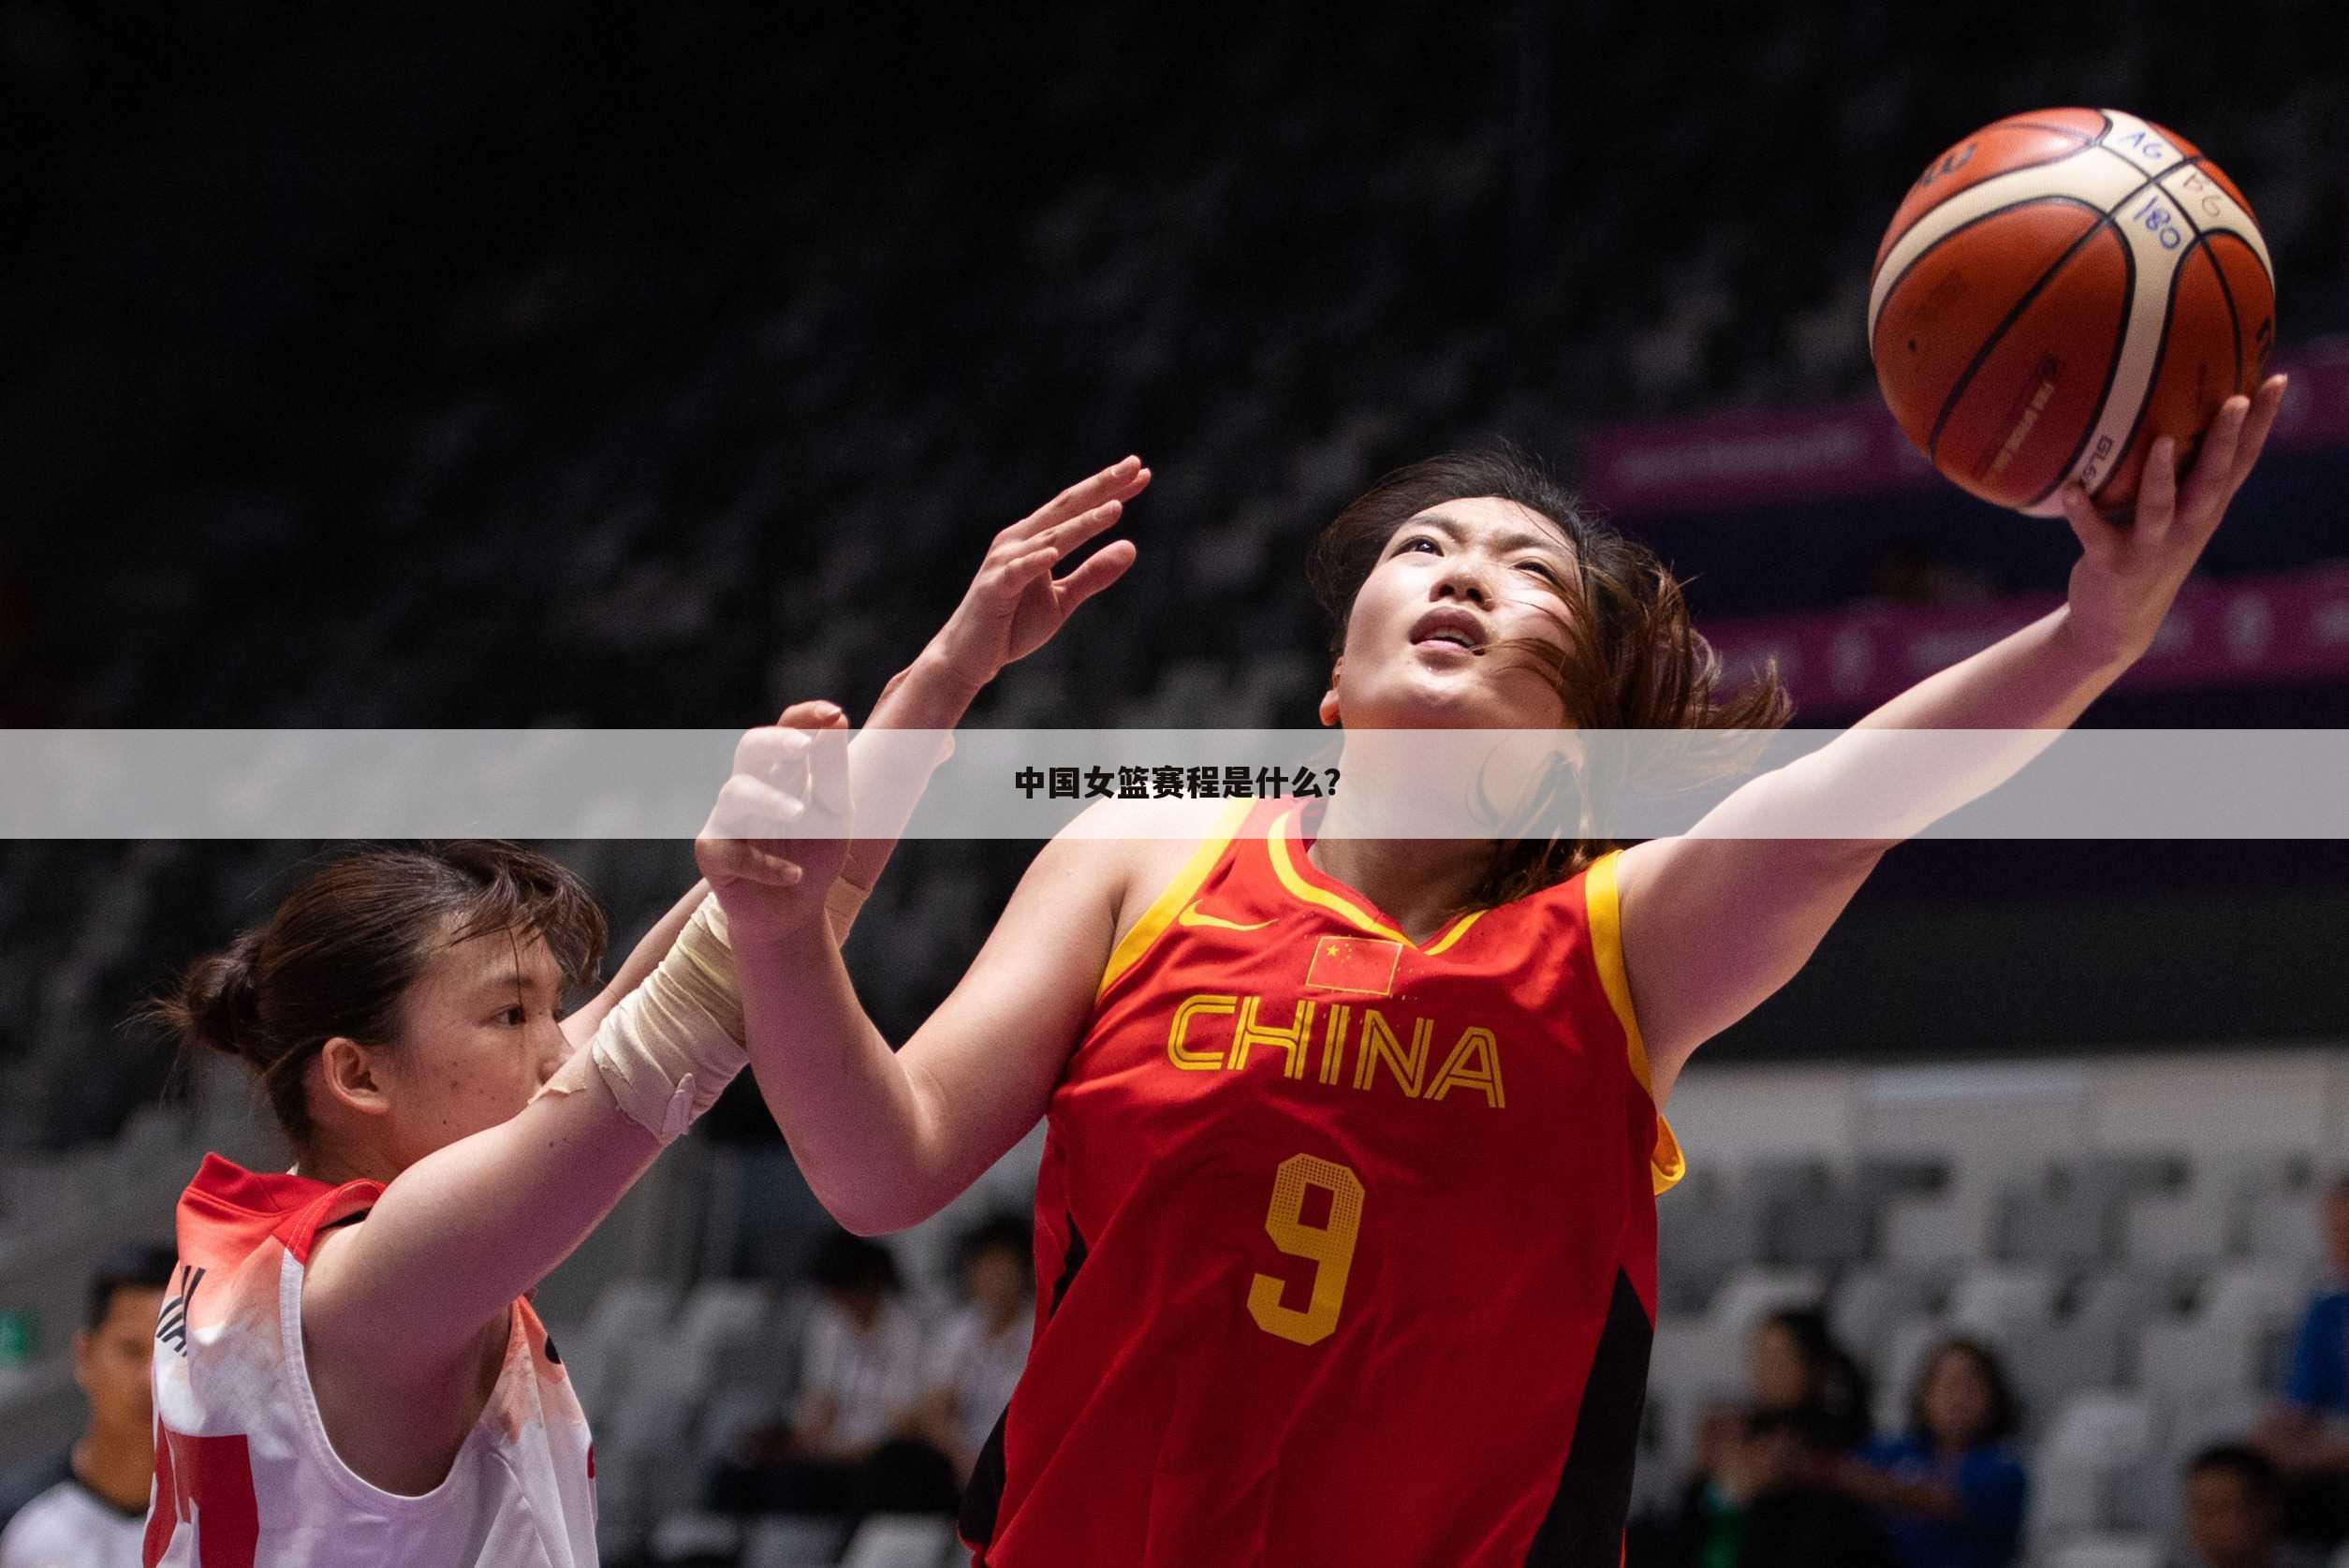 『中国vs比利时』中国vs比利时篮球